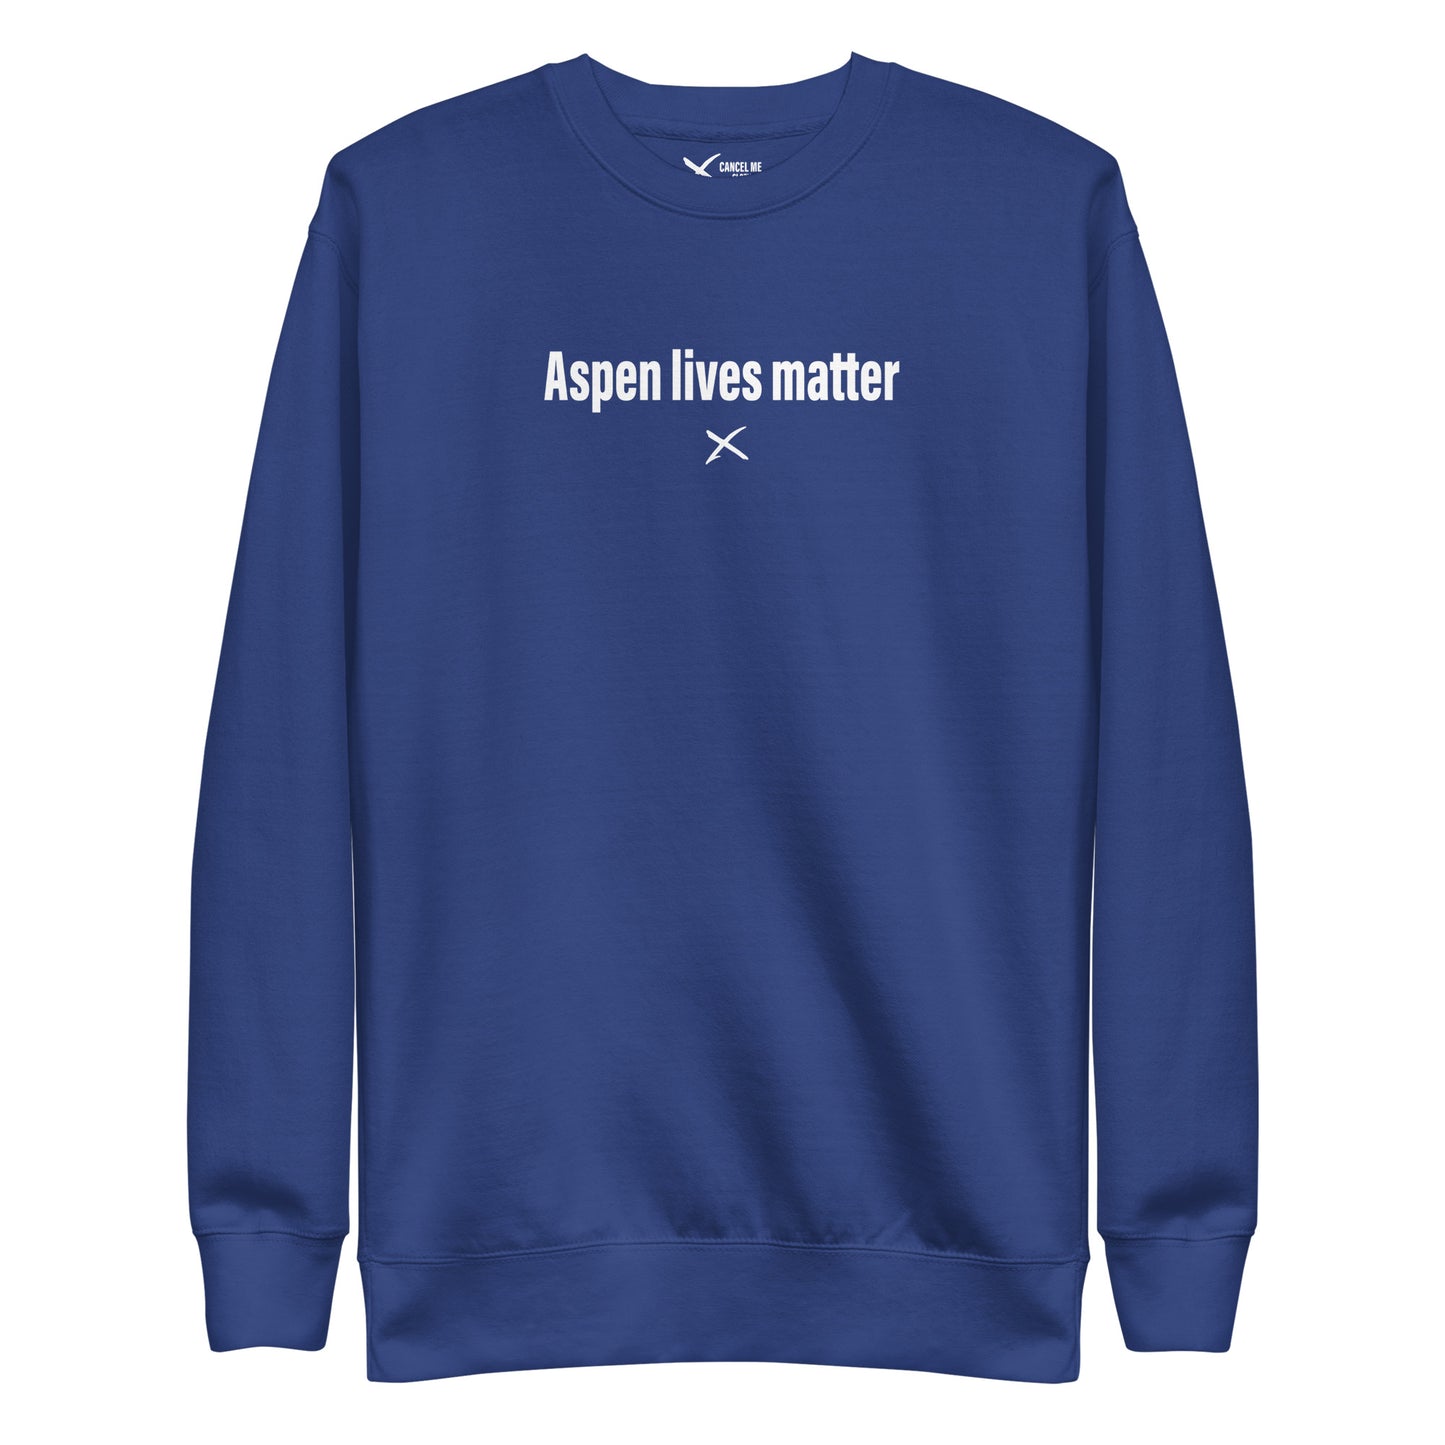 Aspen lives matter - Sweatshirt